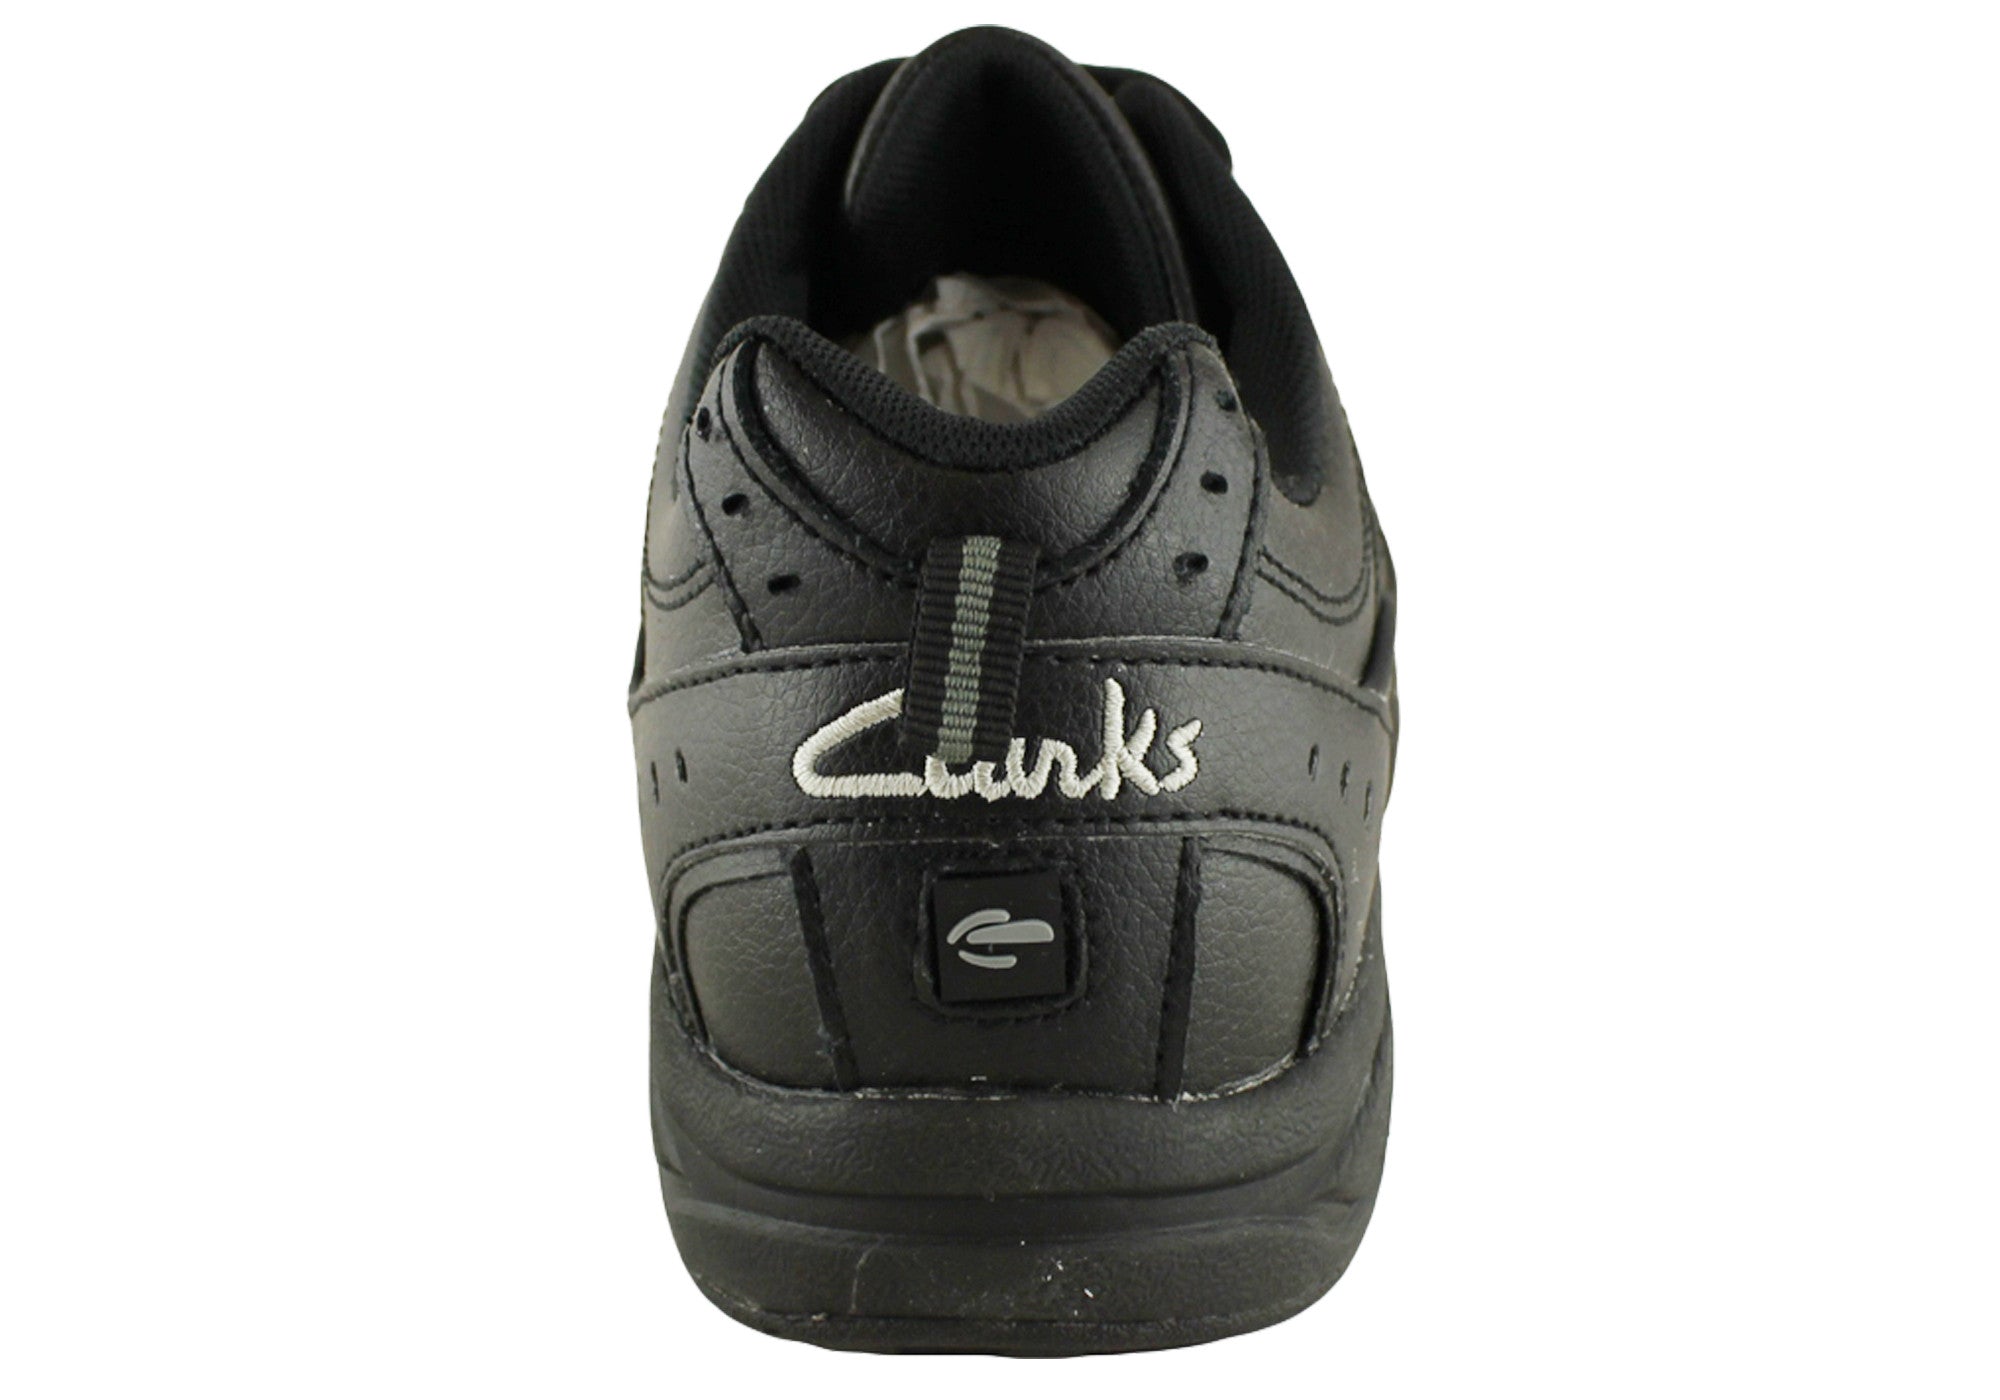 clarkes childrens shoes